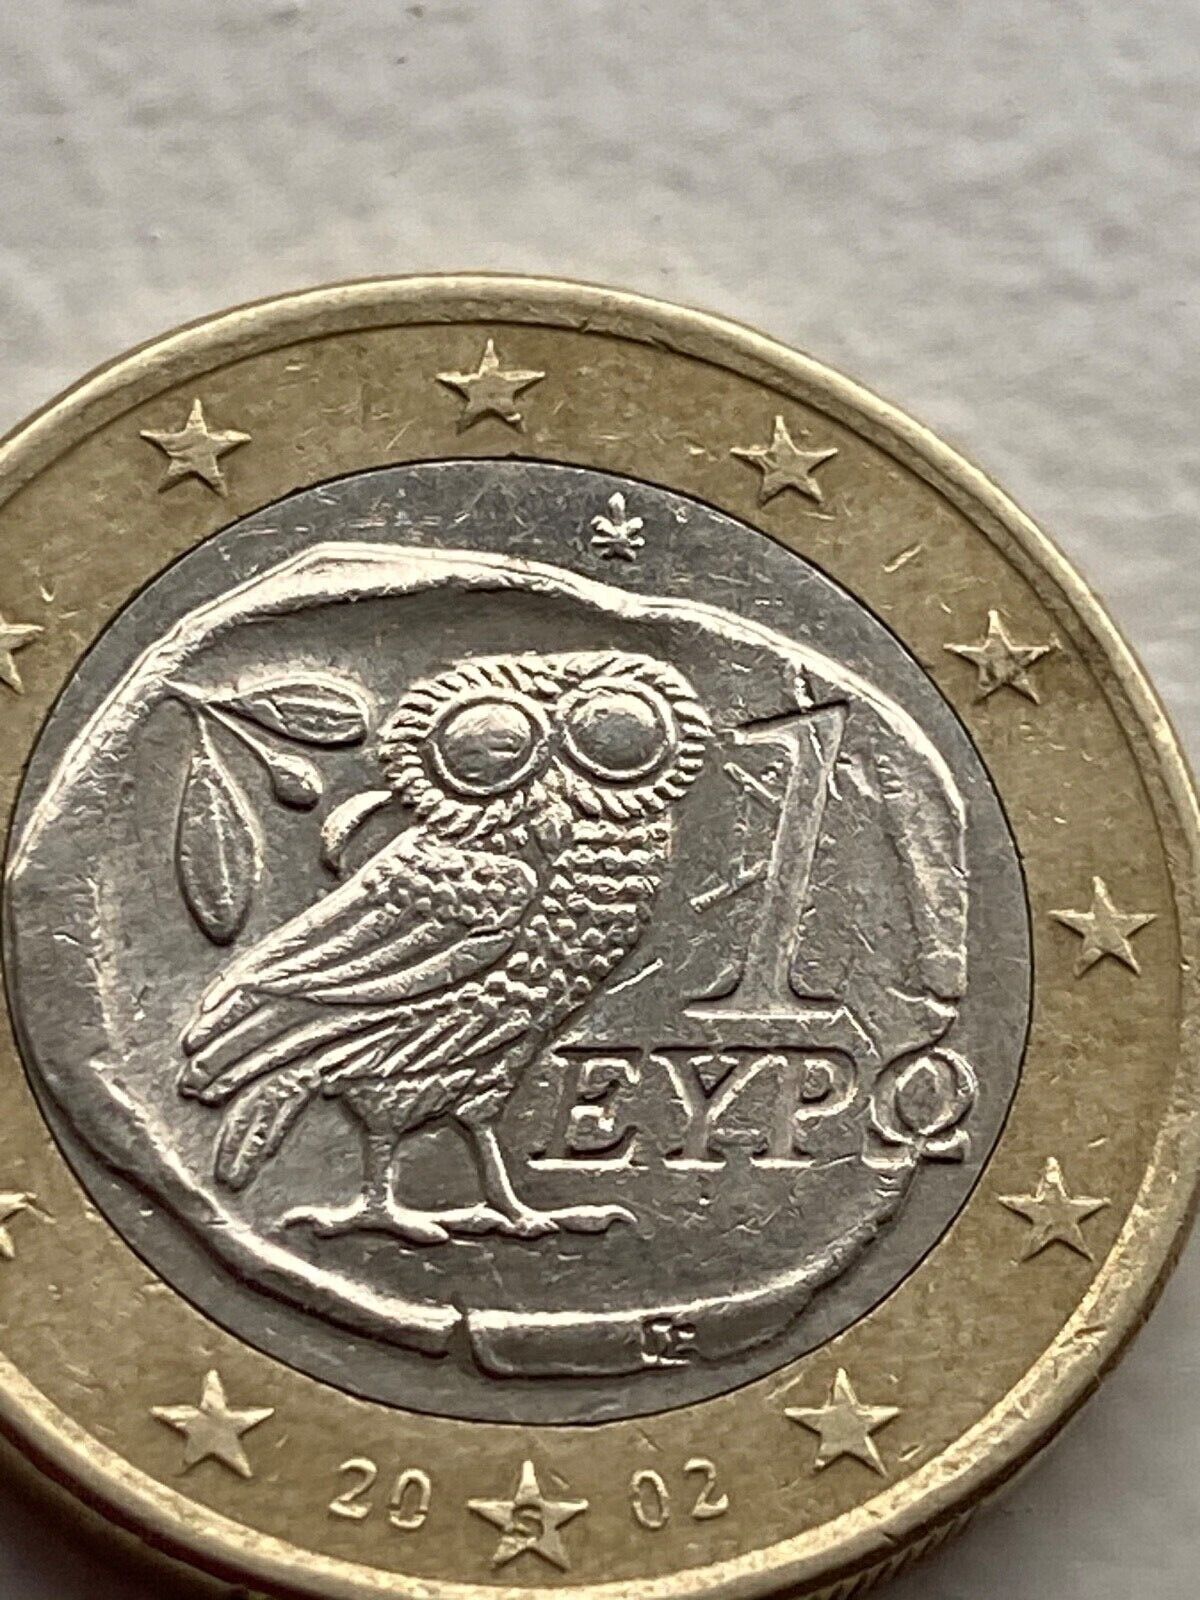 Coin 1 Euro Greece 2002 Coin 1 Euro Greece 2002 with Defect Rare